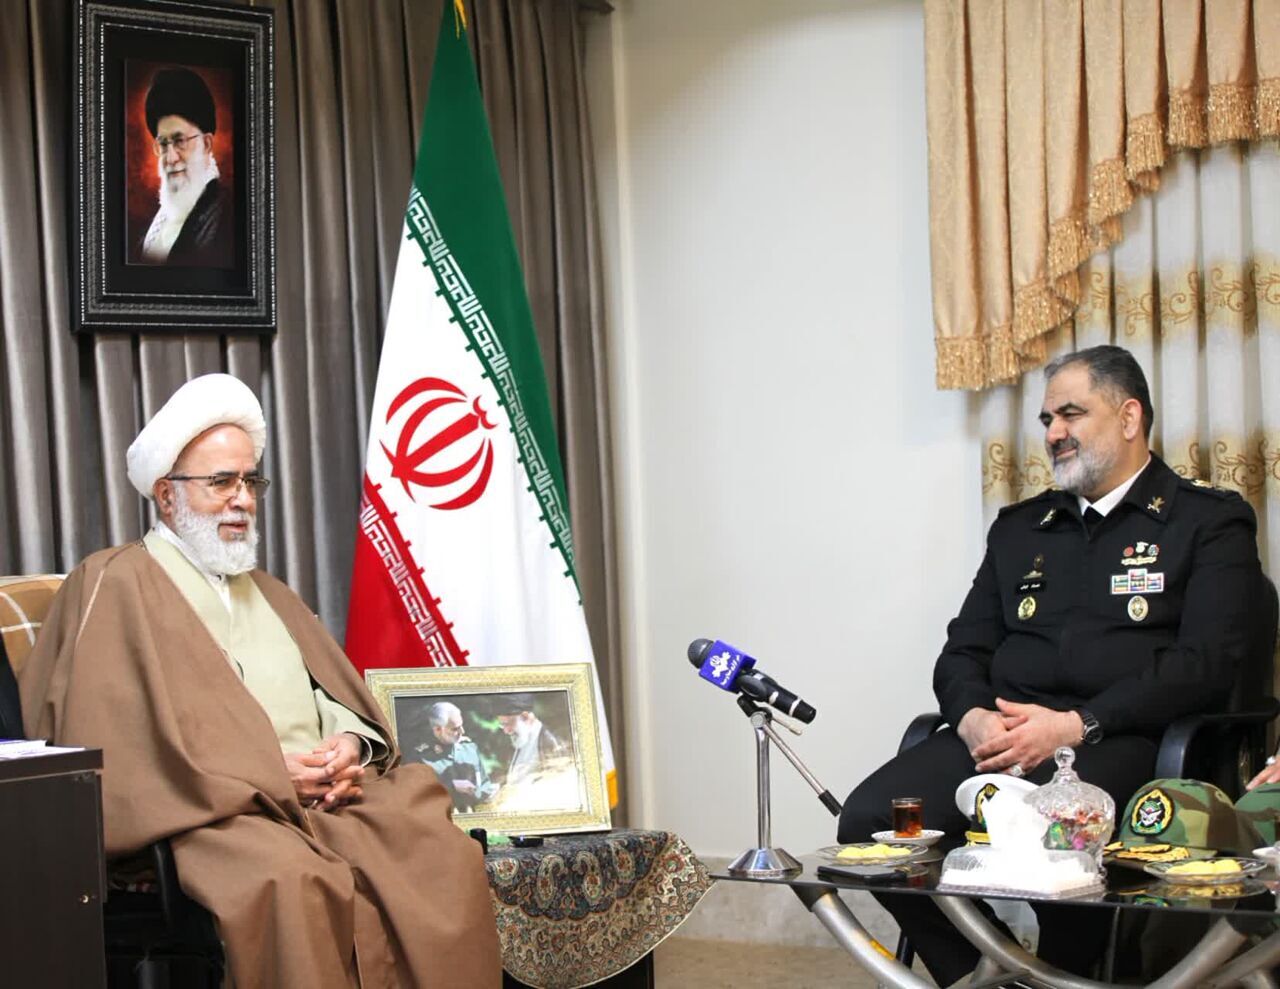 الأدميرال إيراني: بحرية الجيش ترفع علم الجمهورية الإسلامية باقتدار في العالم